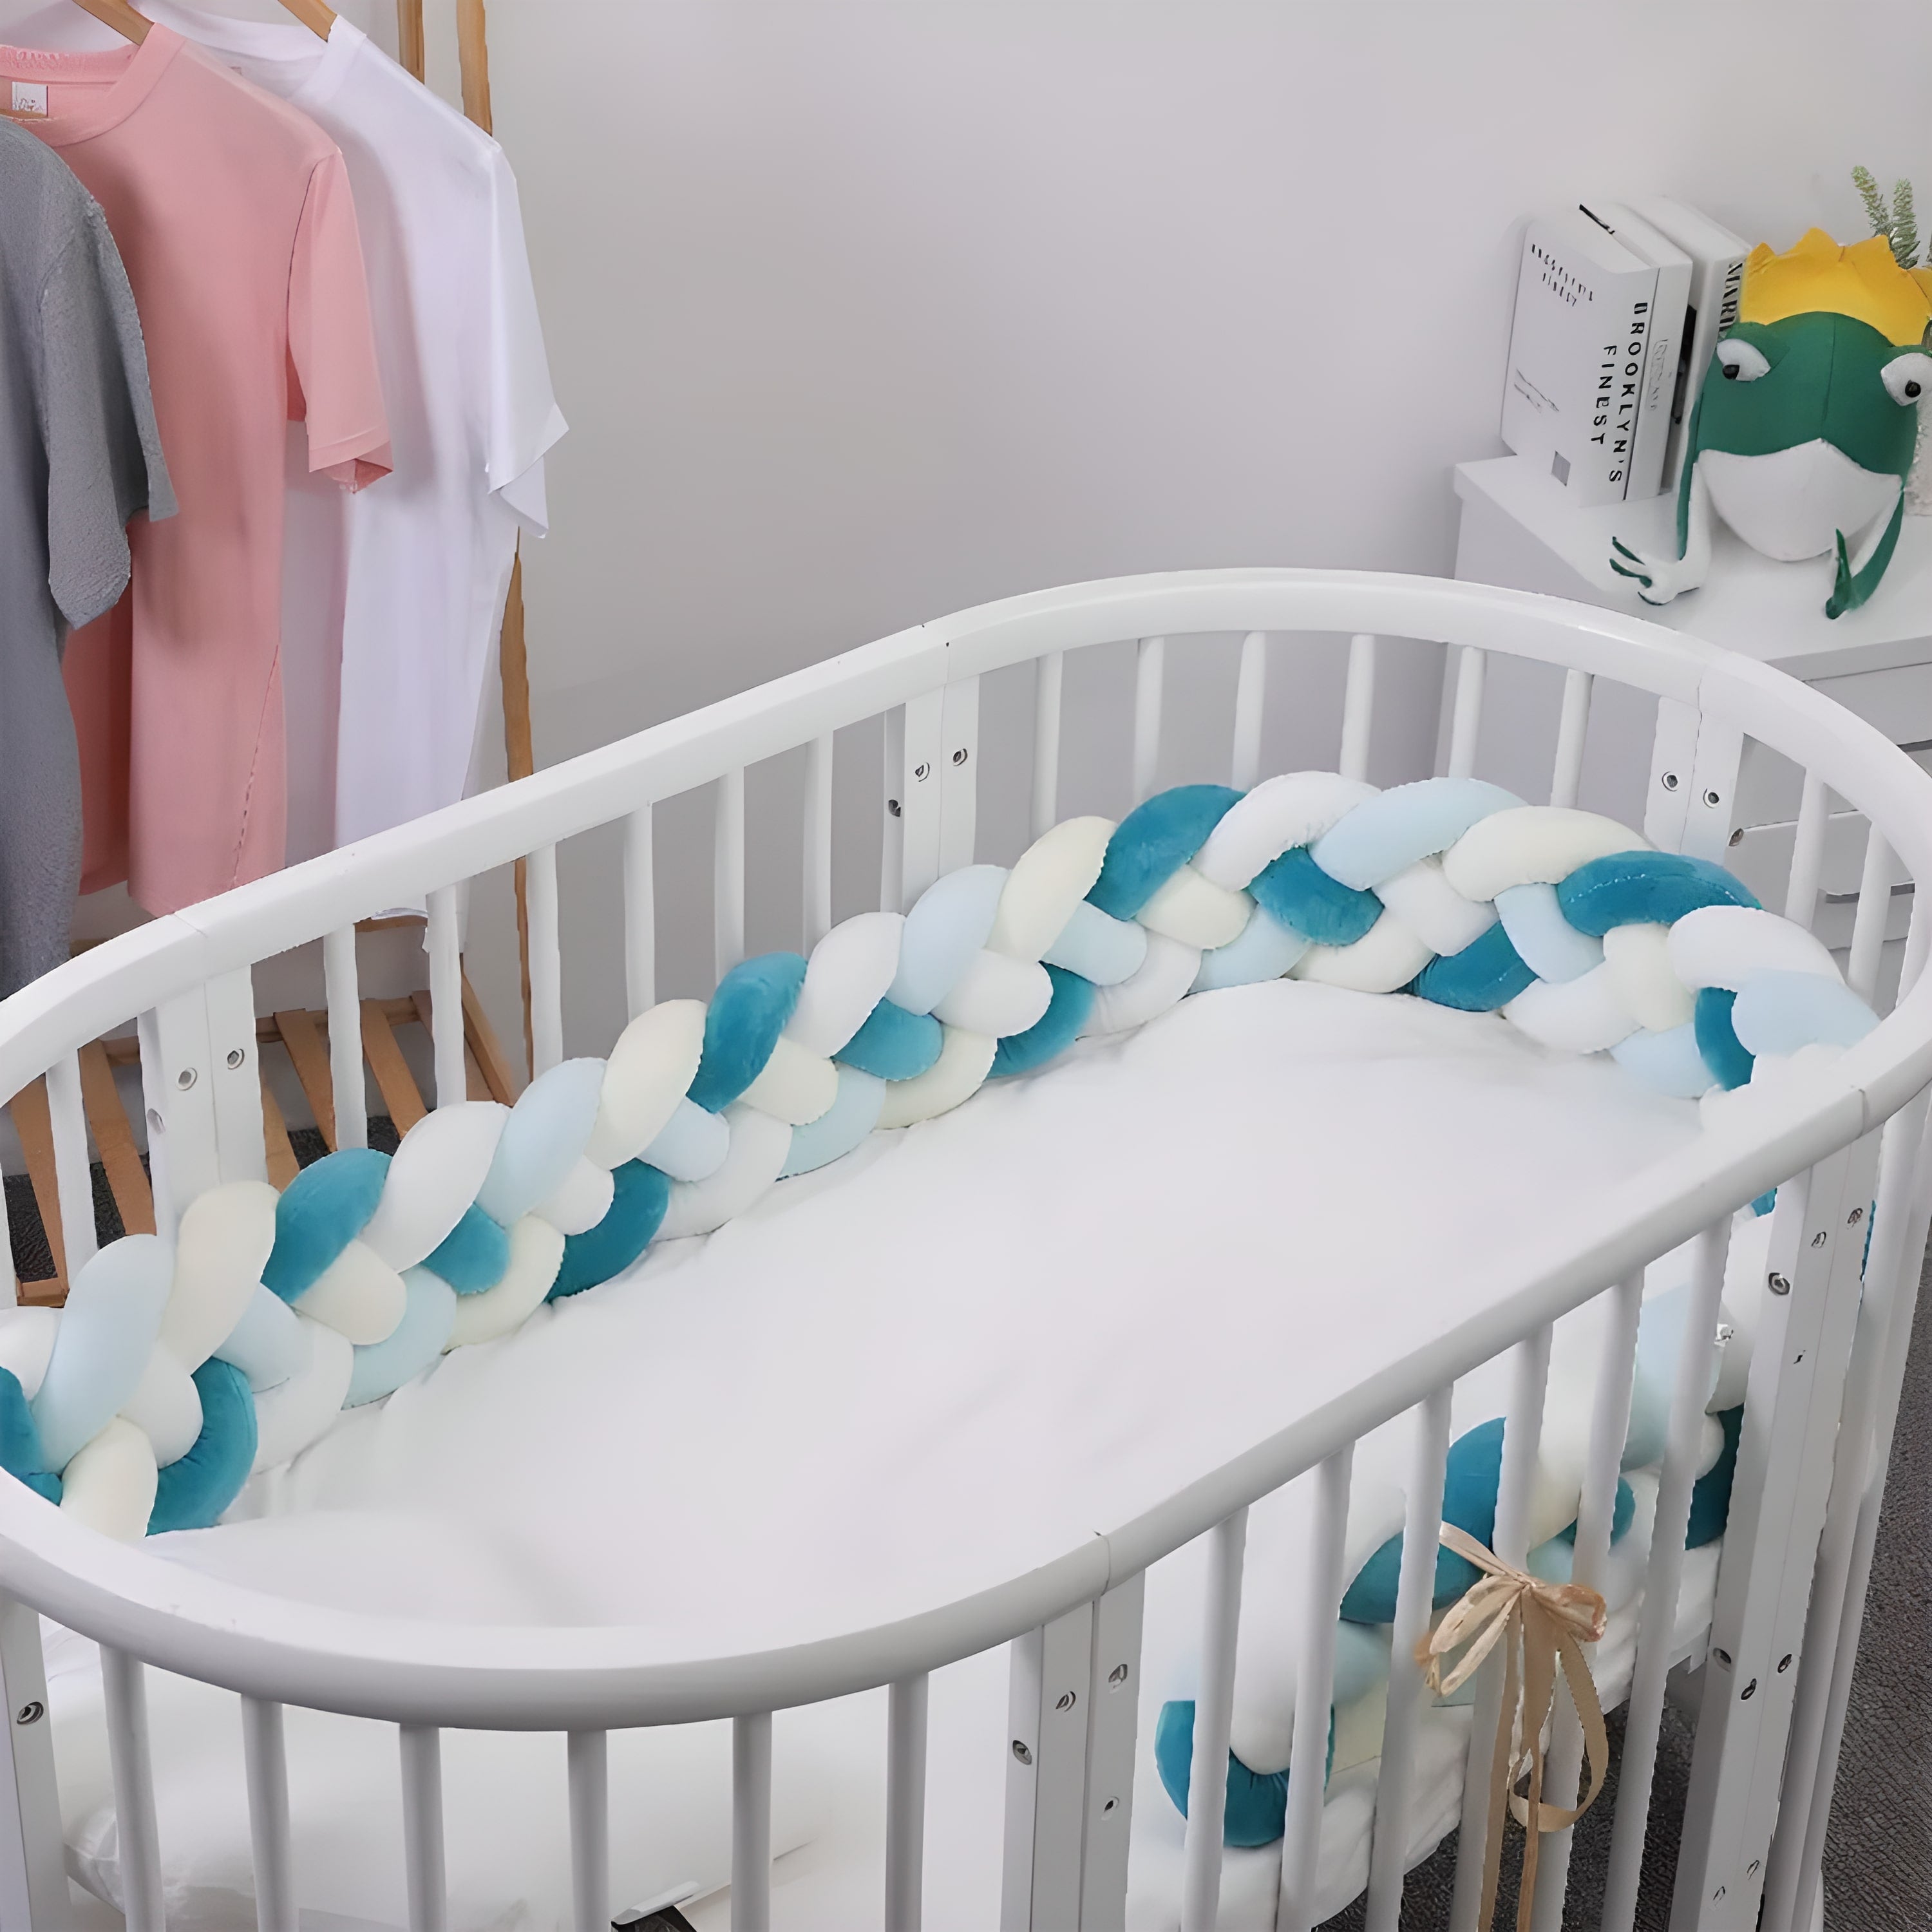 Tour de lit tressé terracotta - Couleurs de bébé